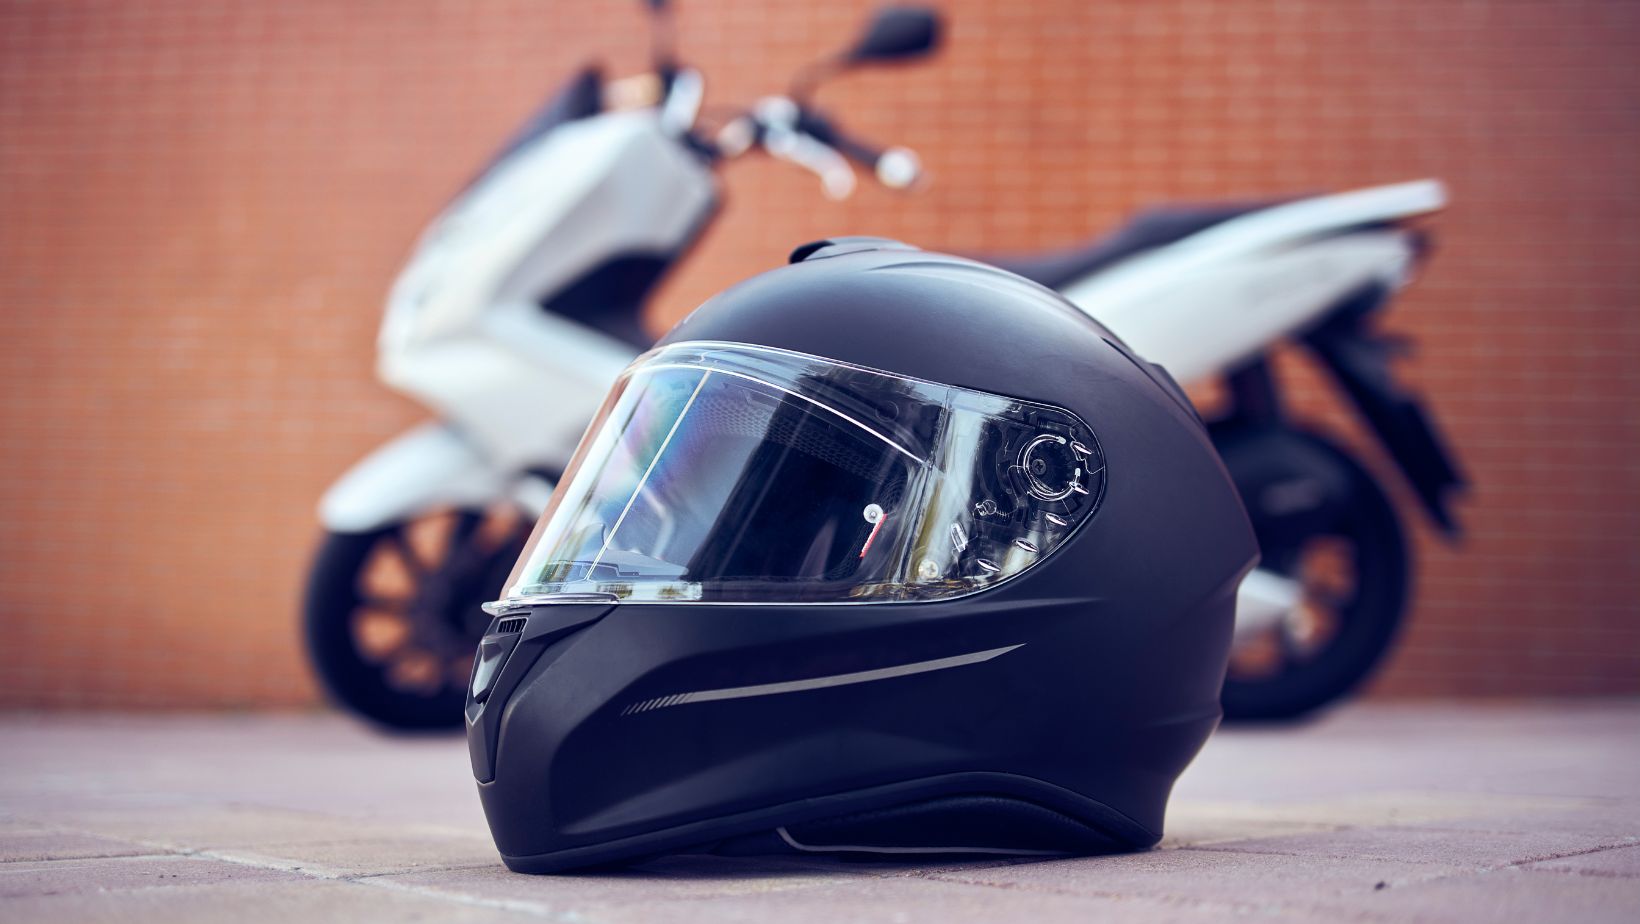 honda motorcycle helmet